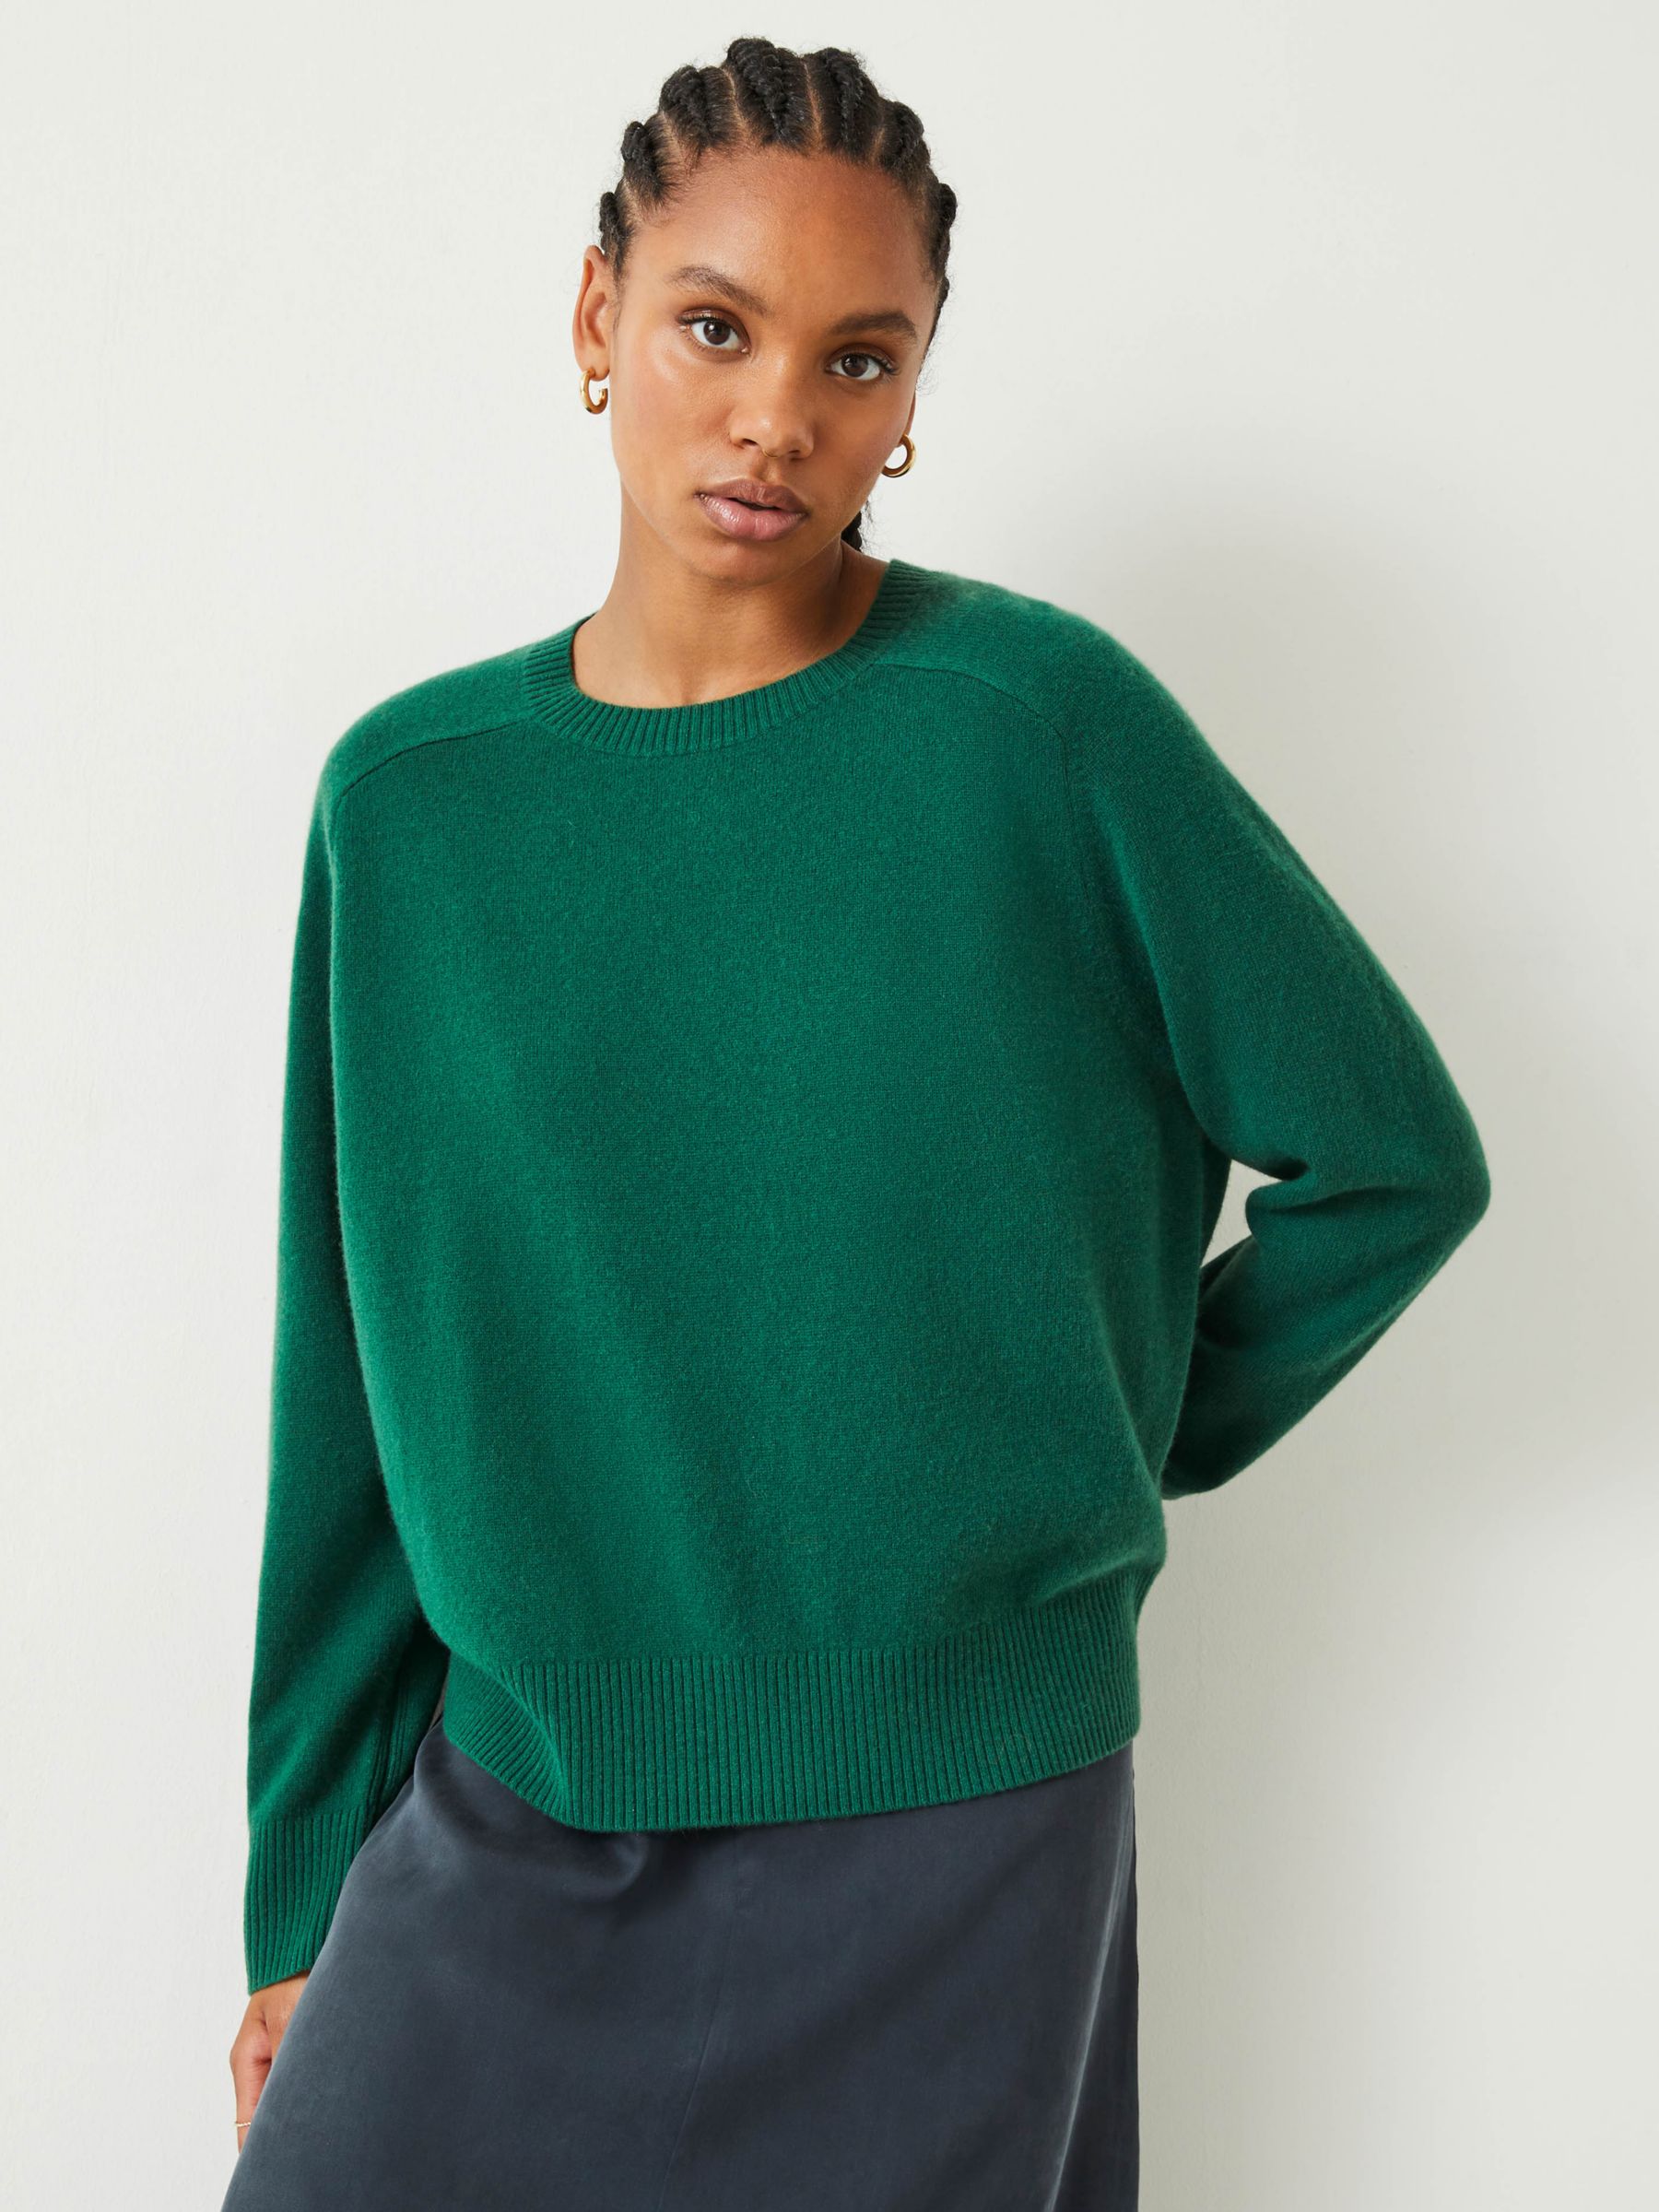 Alina Кашемировый Джемпер HUSH, изумрудно-зеленый мужской кашемировый свитер теплый трикотажный джемпер из 100% чистого кашемира с круглым вырезом 10 цветов зима 2021